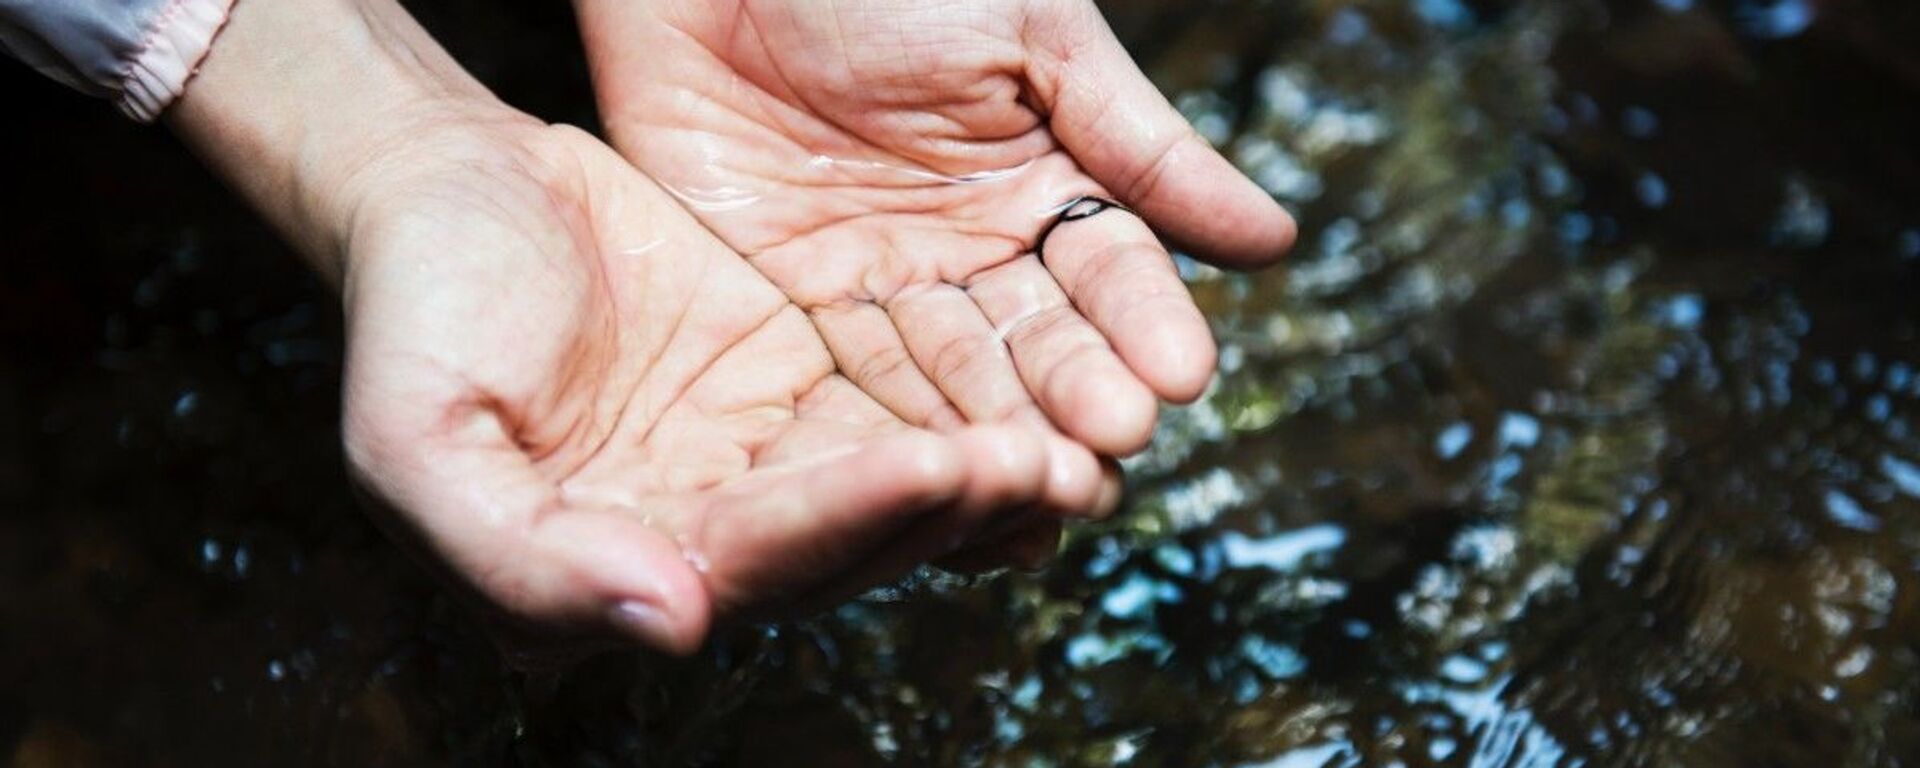 Мытье рук в чистой воде - Sputnik Таджикистан, 1920, 20.05.2021